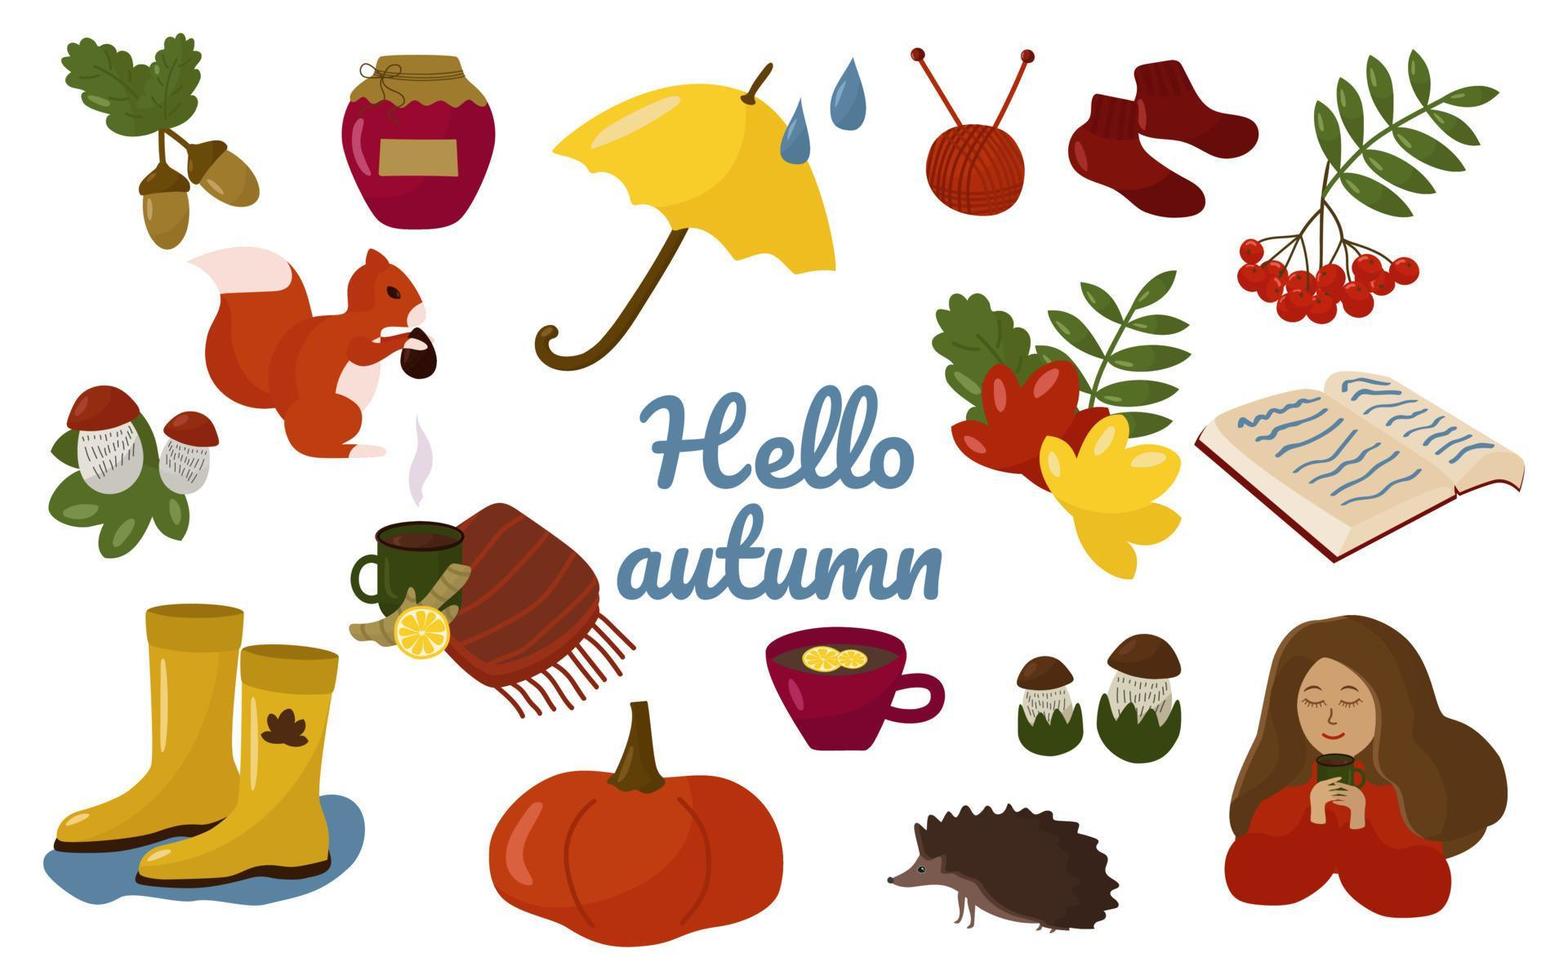 Hallo herfst. een reeks elementen op een herfstthema eikels, lijsterbes, eekhoorn, egel, breiwerk, pompoen, laarzen, bladeren. vector